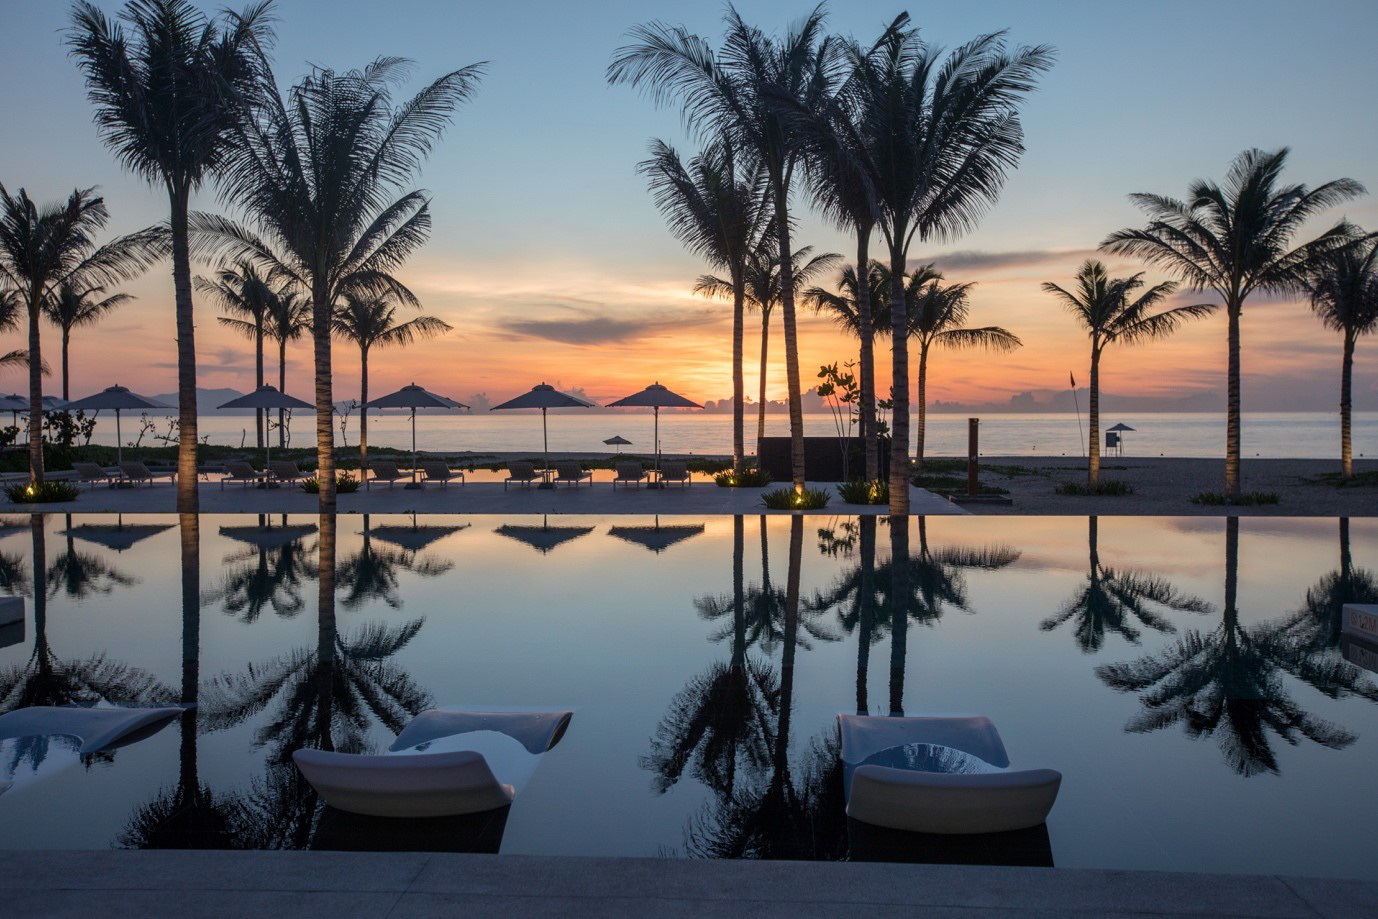 ALMA Resort voted in Vietnam’s top 10 best resorts in 2020